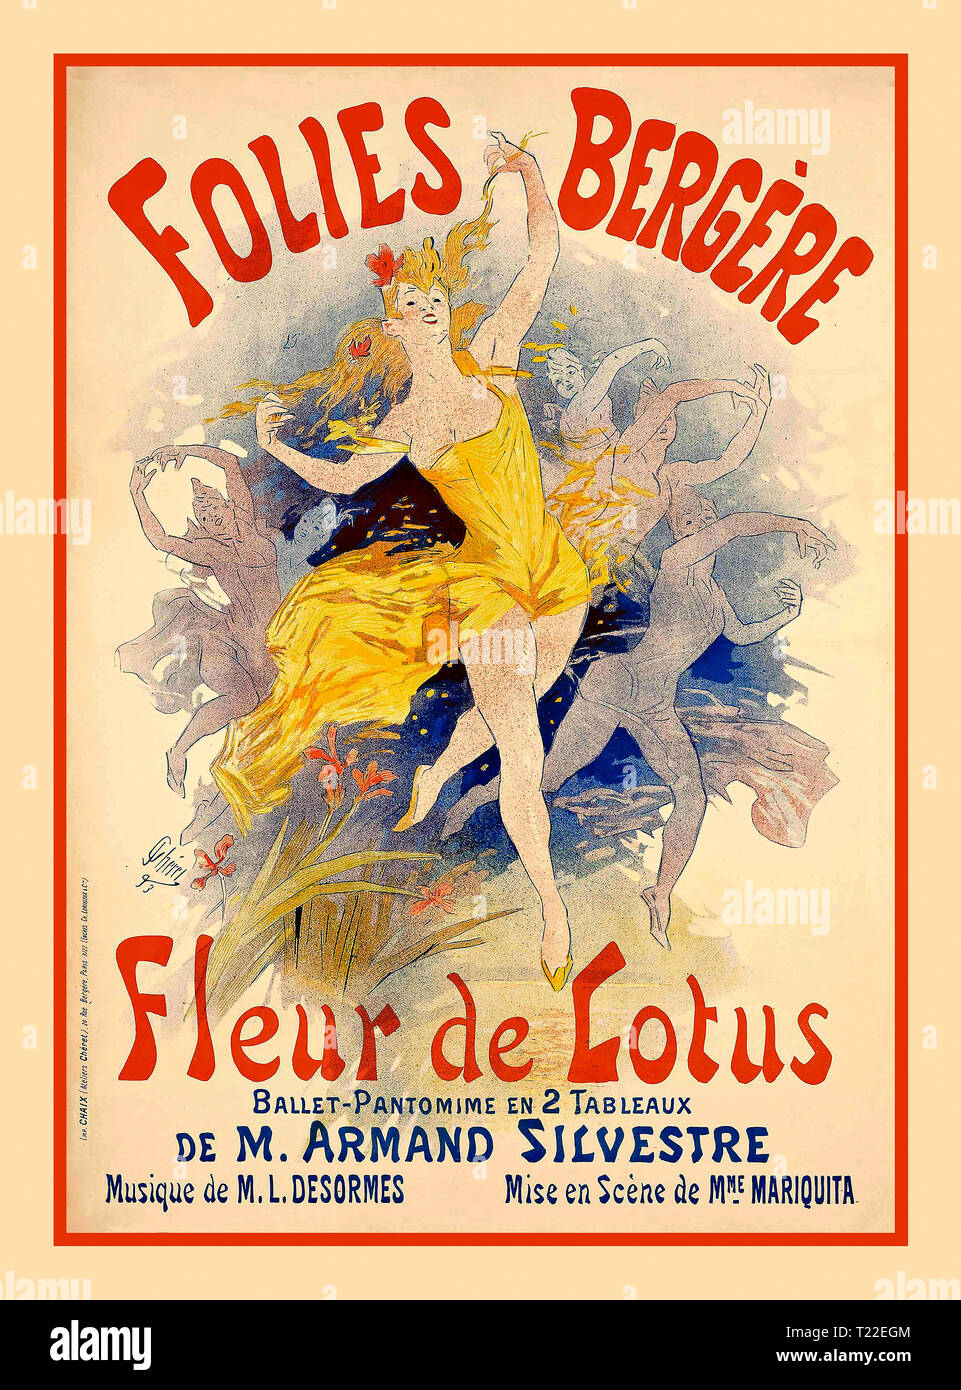 'Folies Bergère', 1890 Paris Entertainment Poster 'Folies Bergère', 'Fleur de Lotus', 1893 Jugendstilplakat für das Ballett Pantomime de M.Armand Silvestre Stockfoto